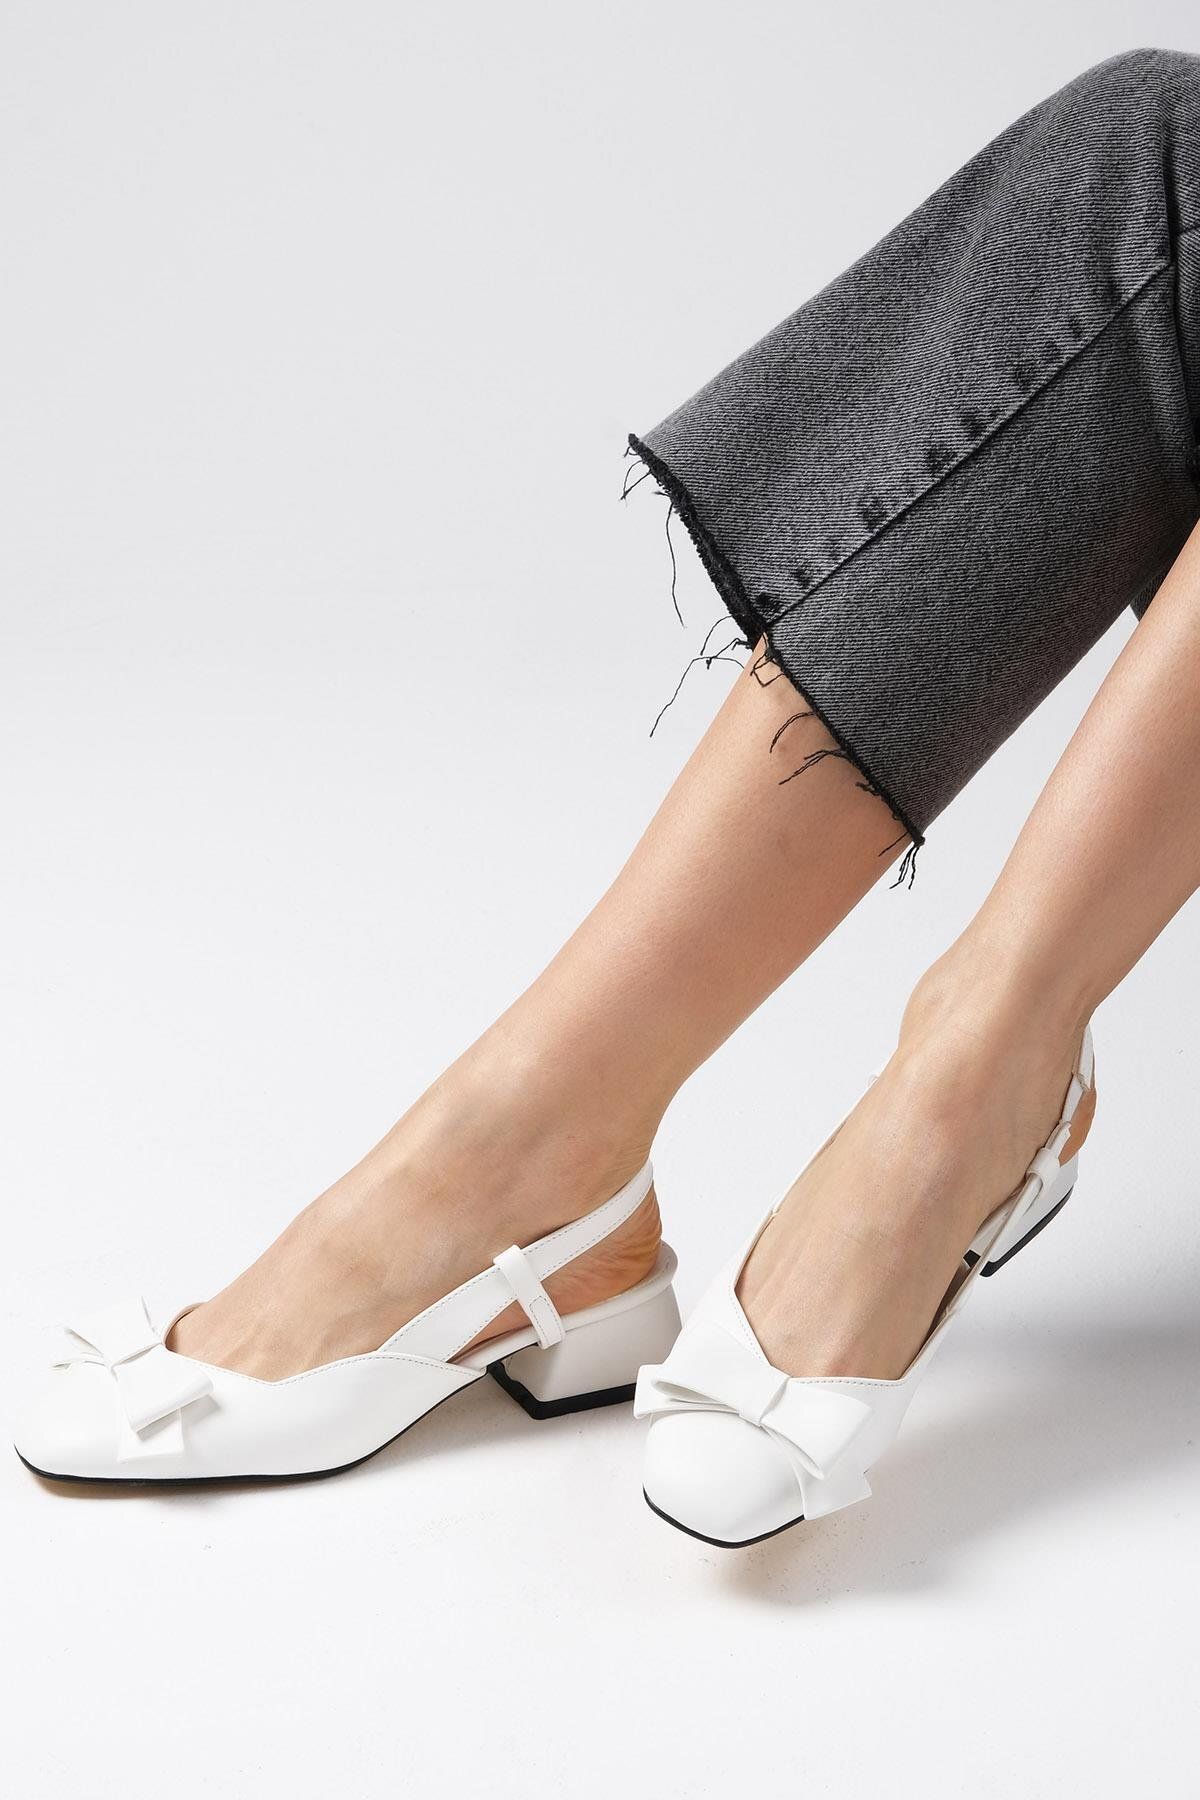 Mio Gusto Billie Beyaz Renk Arkası Açık Fiyonk Aksesuarlı Kadın Kısa Topuklu Ayakkabı